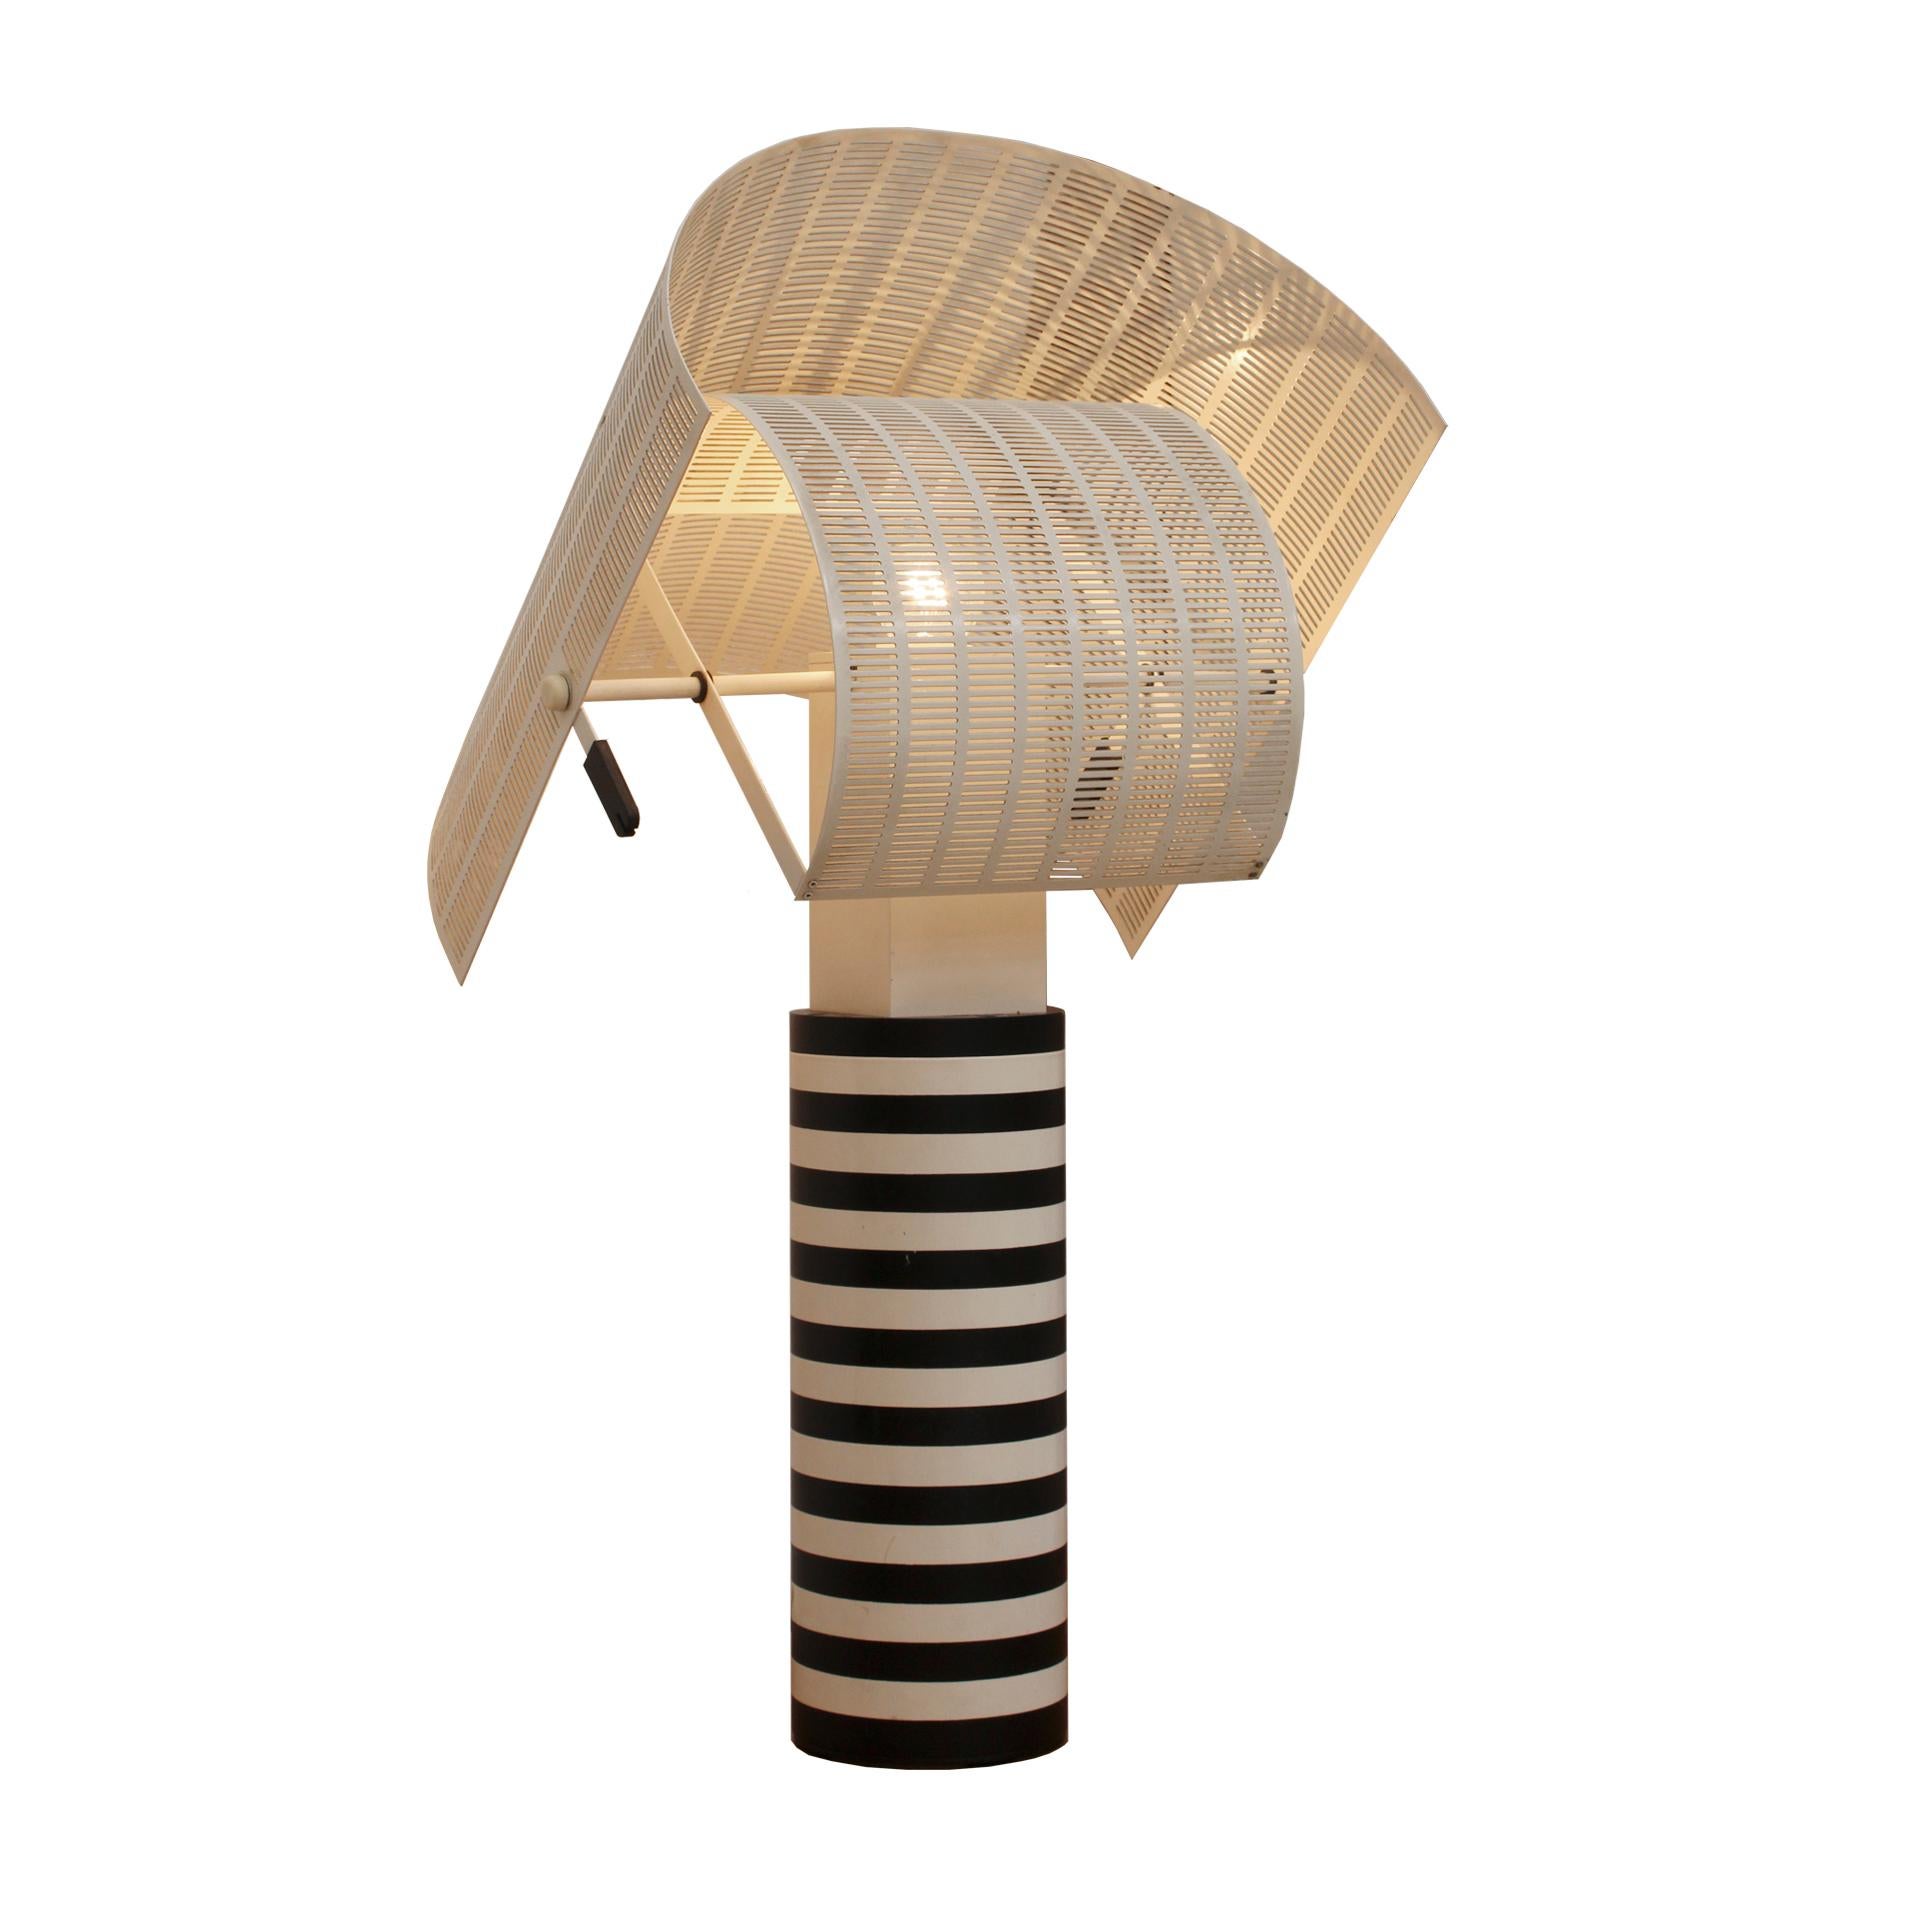 artemide shogun table lamp